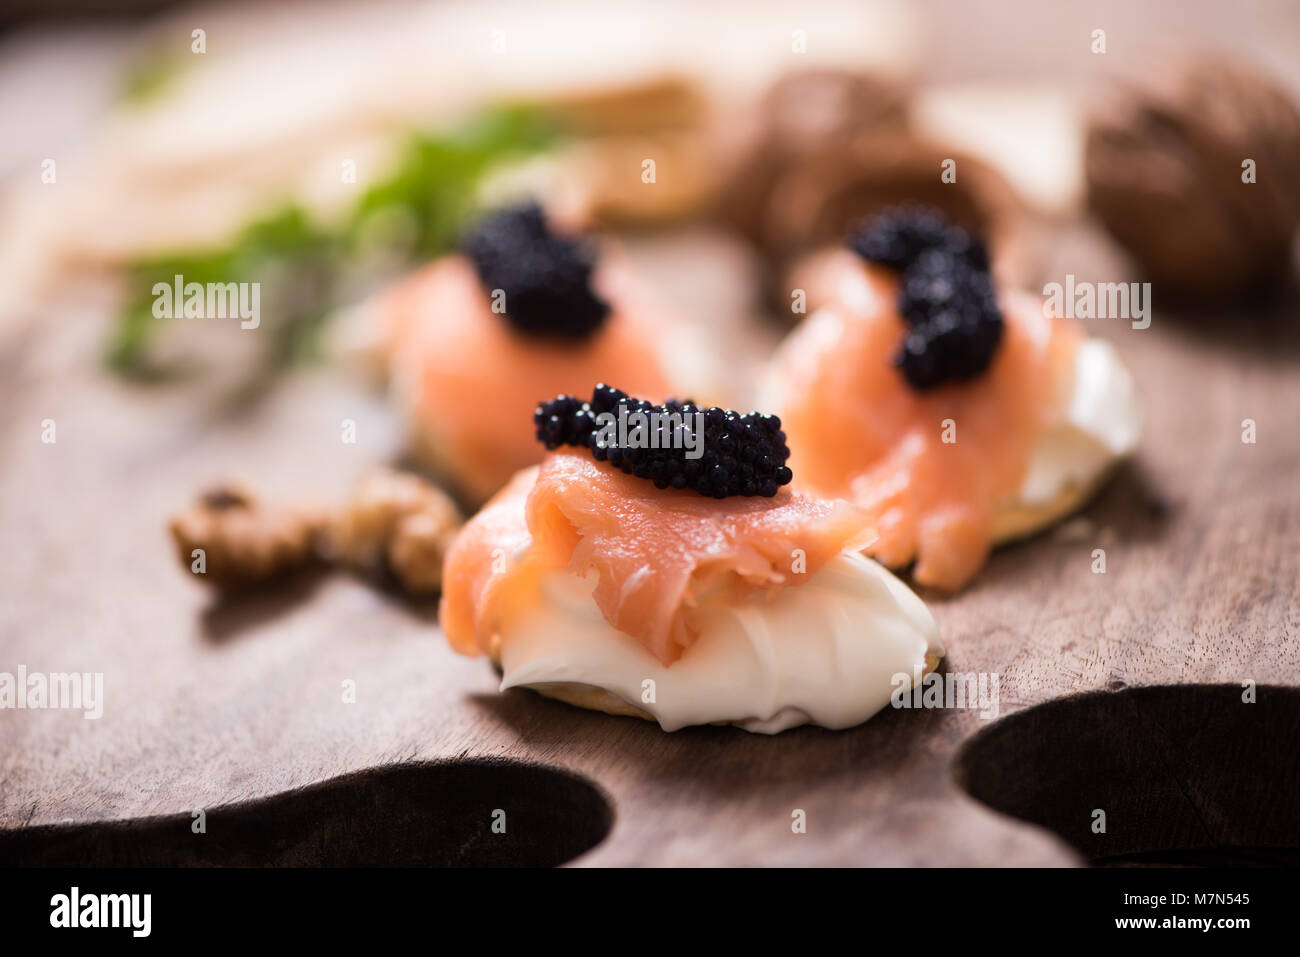 Canapés mit geräuchertem Lachs und Kaviar Stockfotografie - Alamy